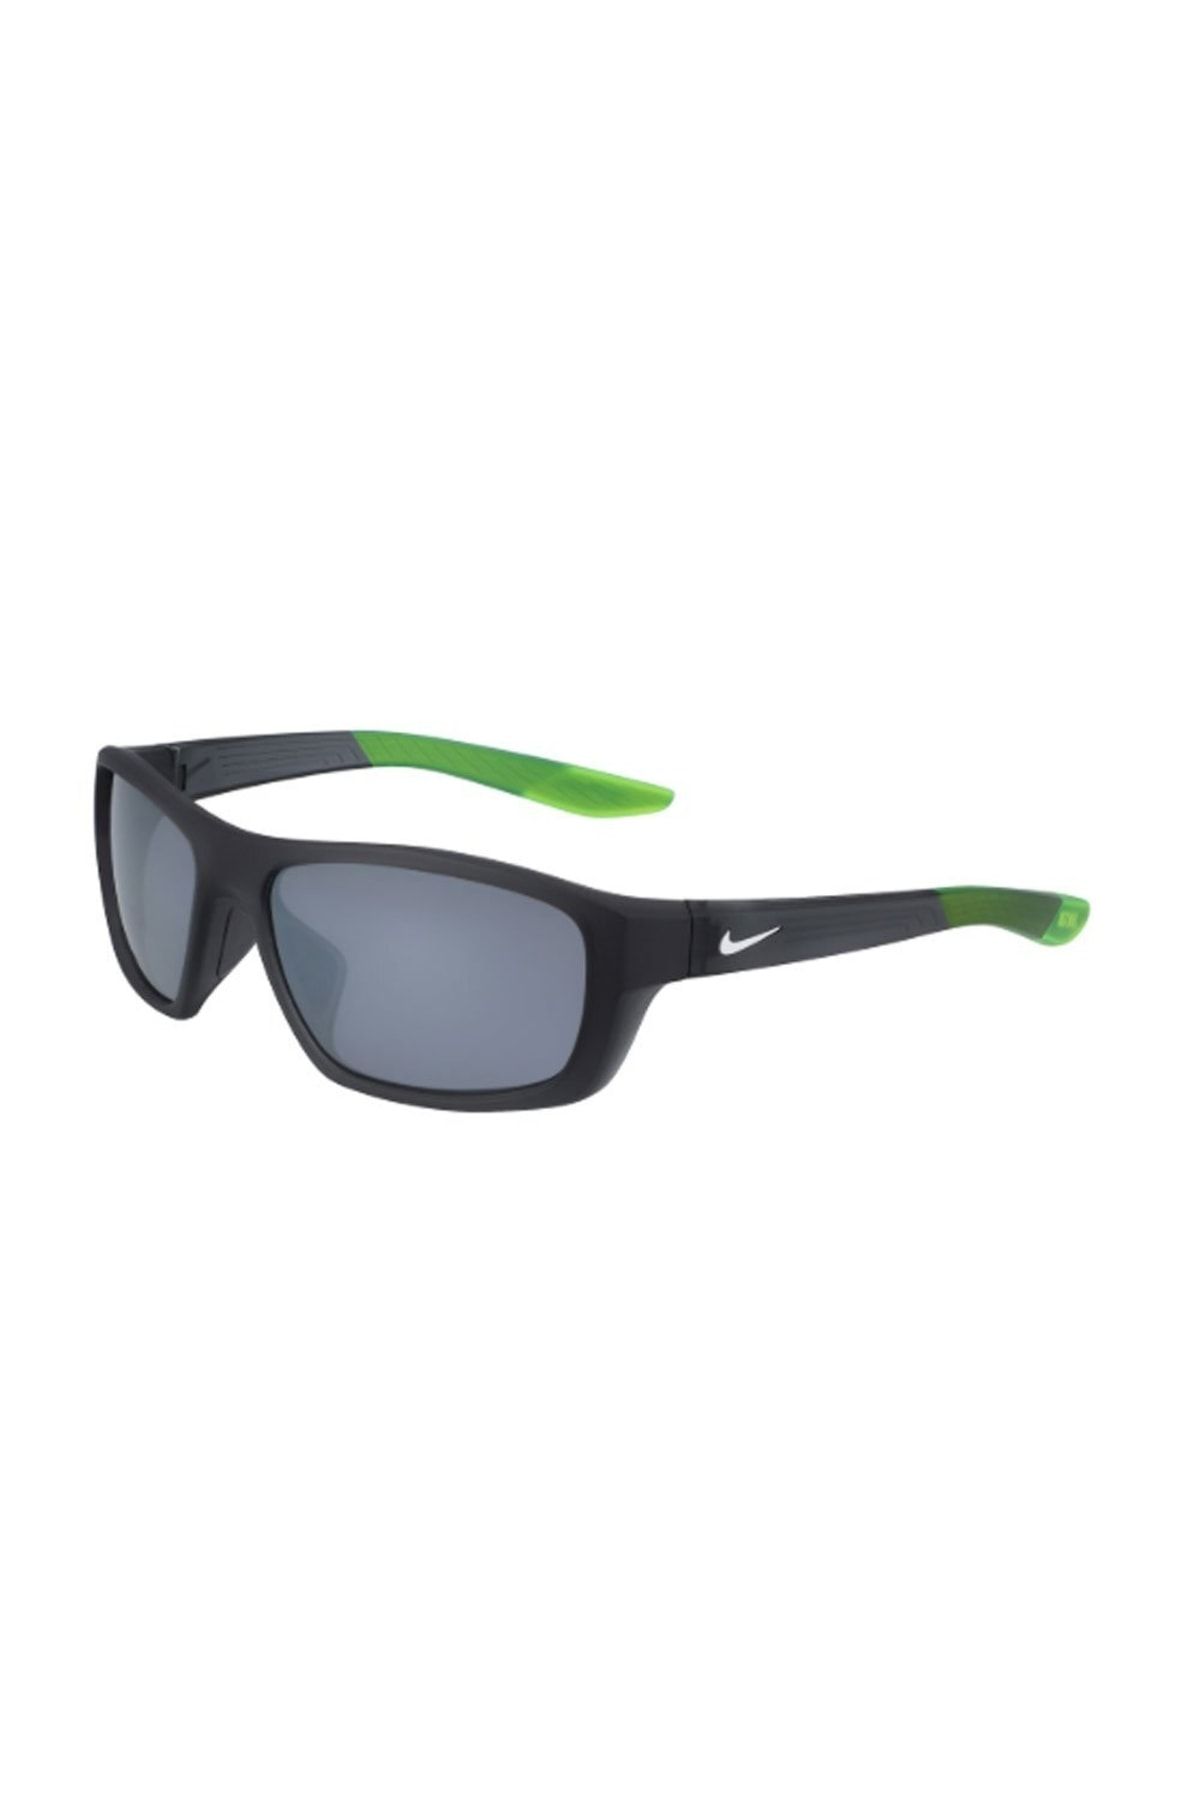 Nike Brazen Boost Ct8179 021 57*16 Sporcu Güneş Gözlüğü